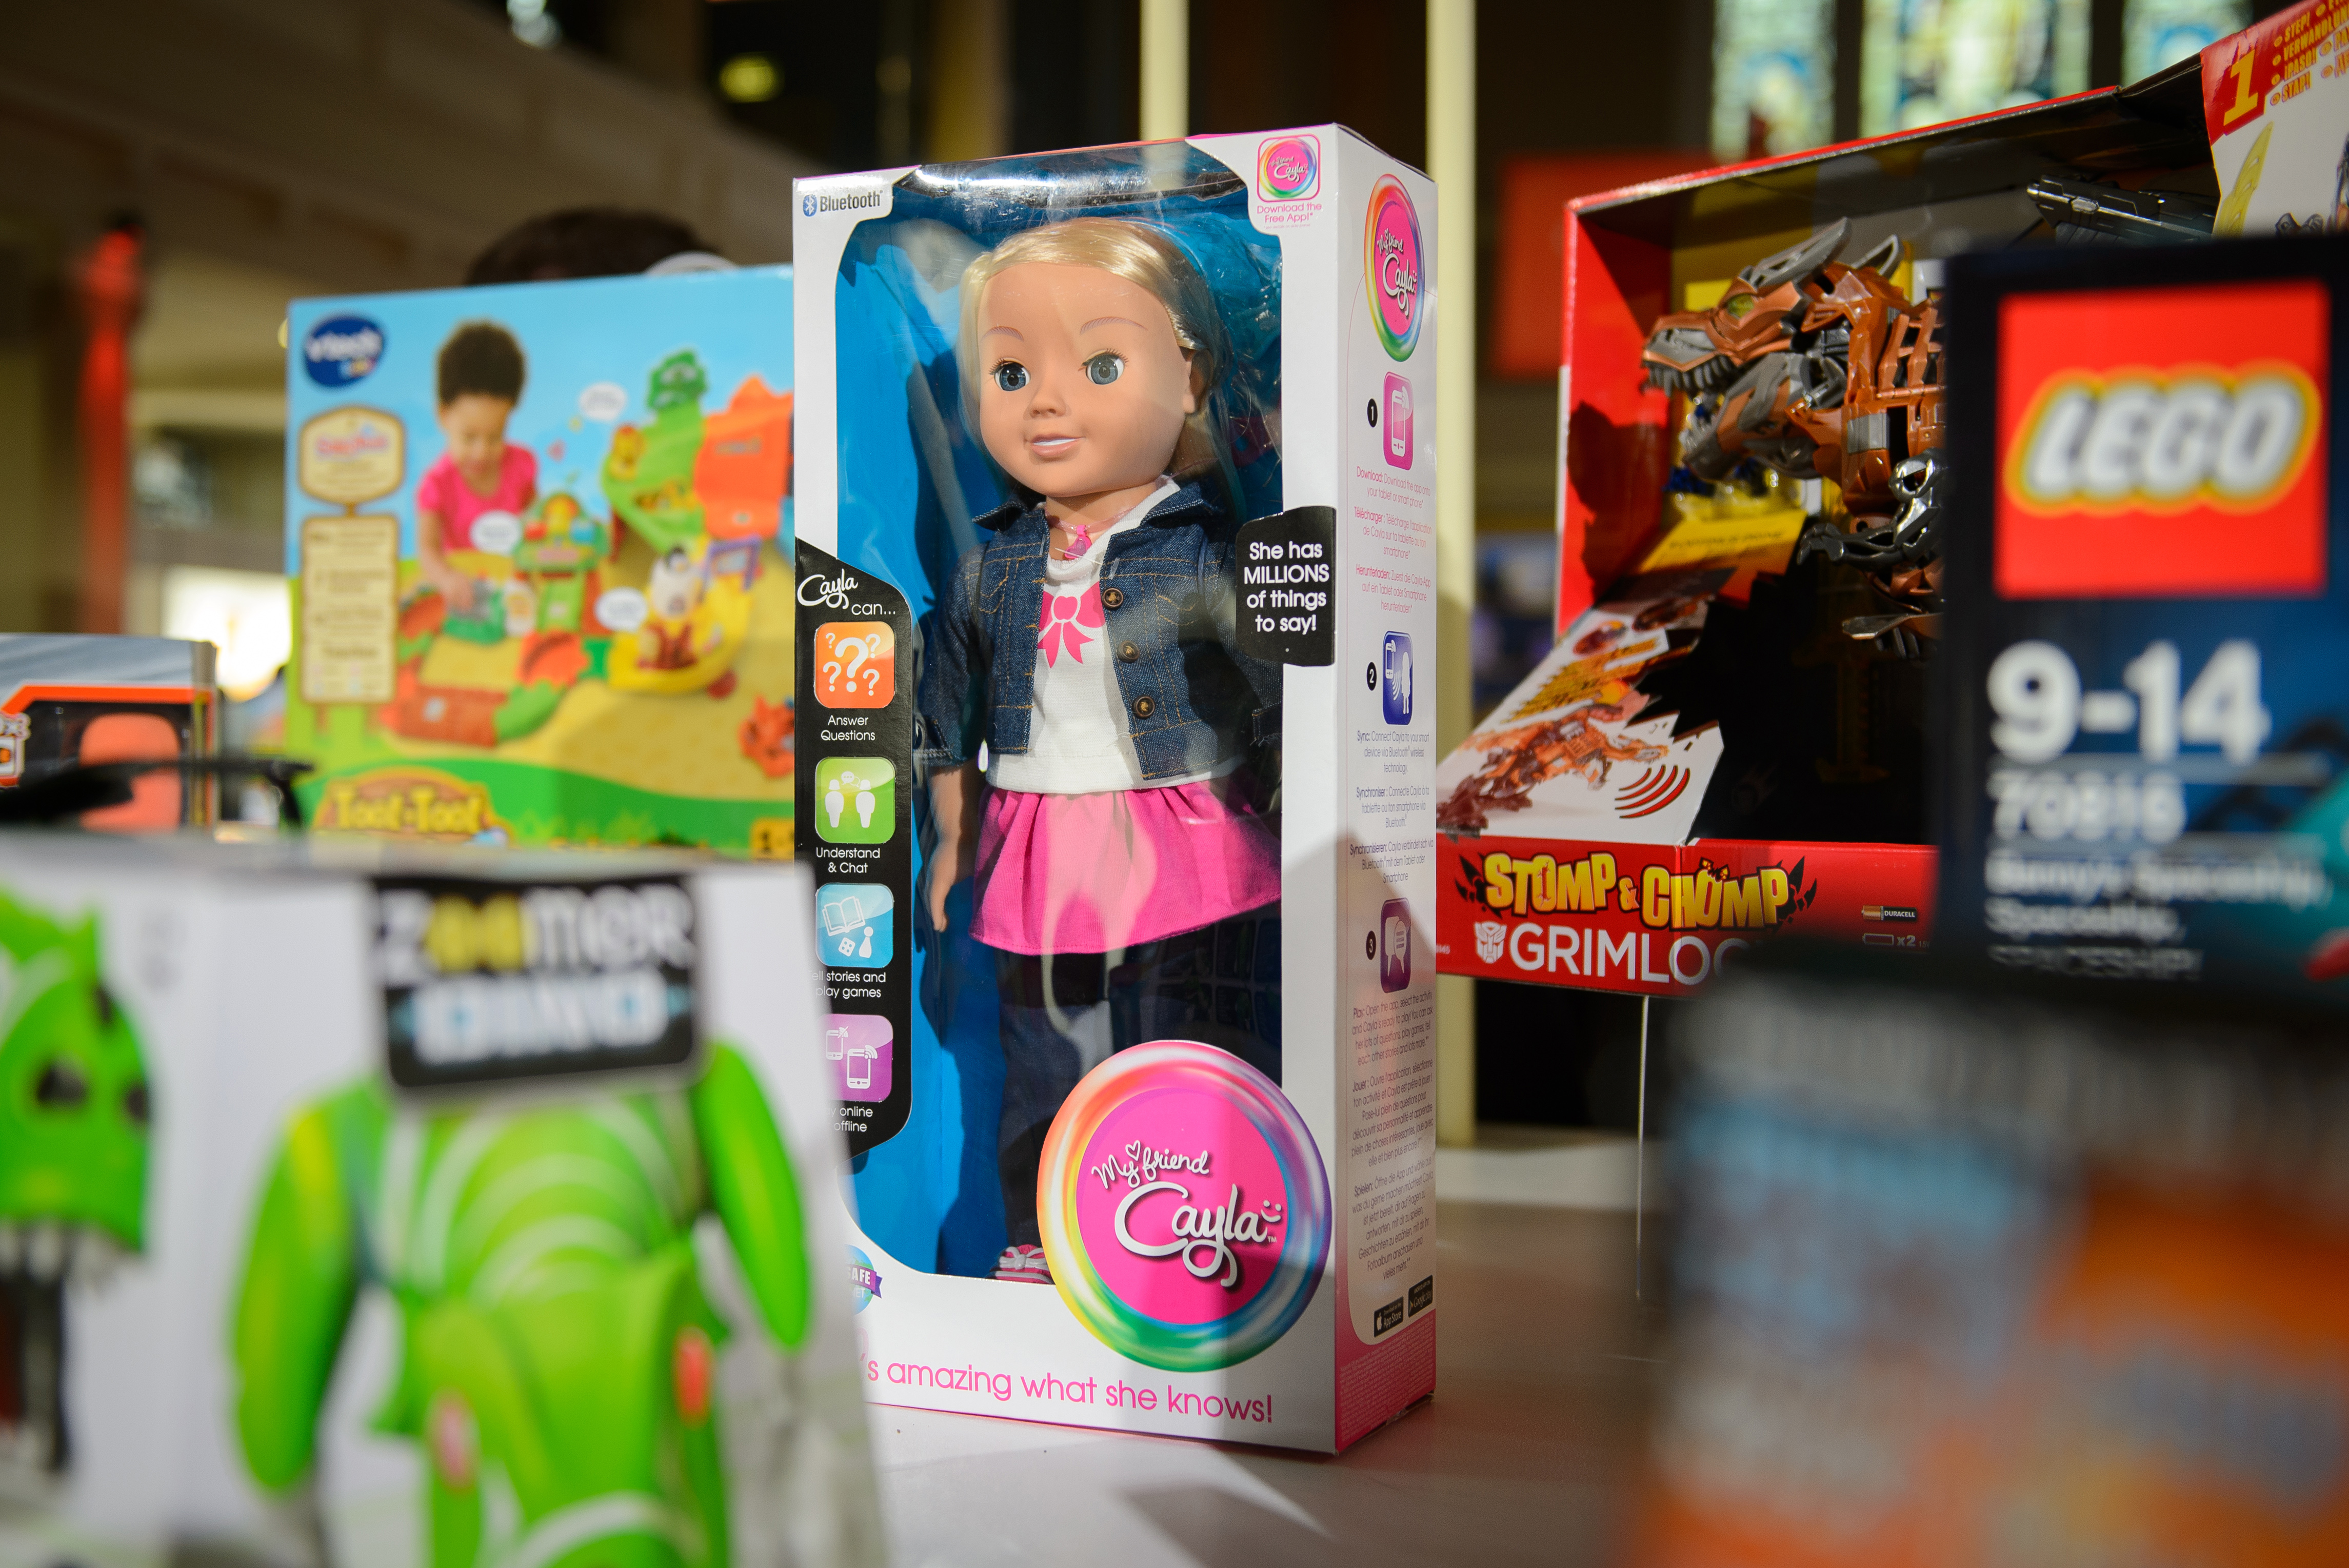 Kémkedésre képes játékbabát tiltottak be Németországban